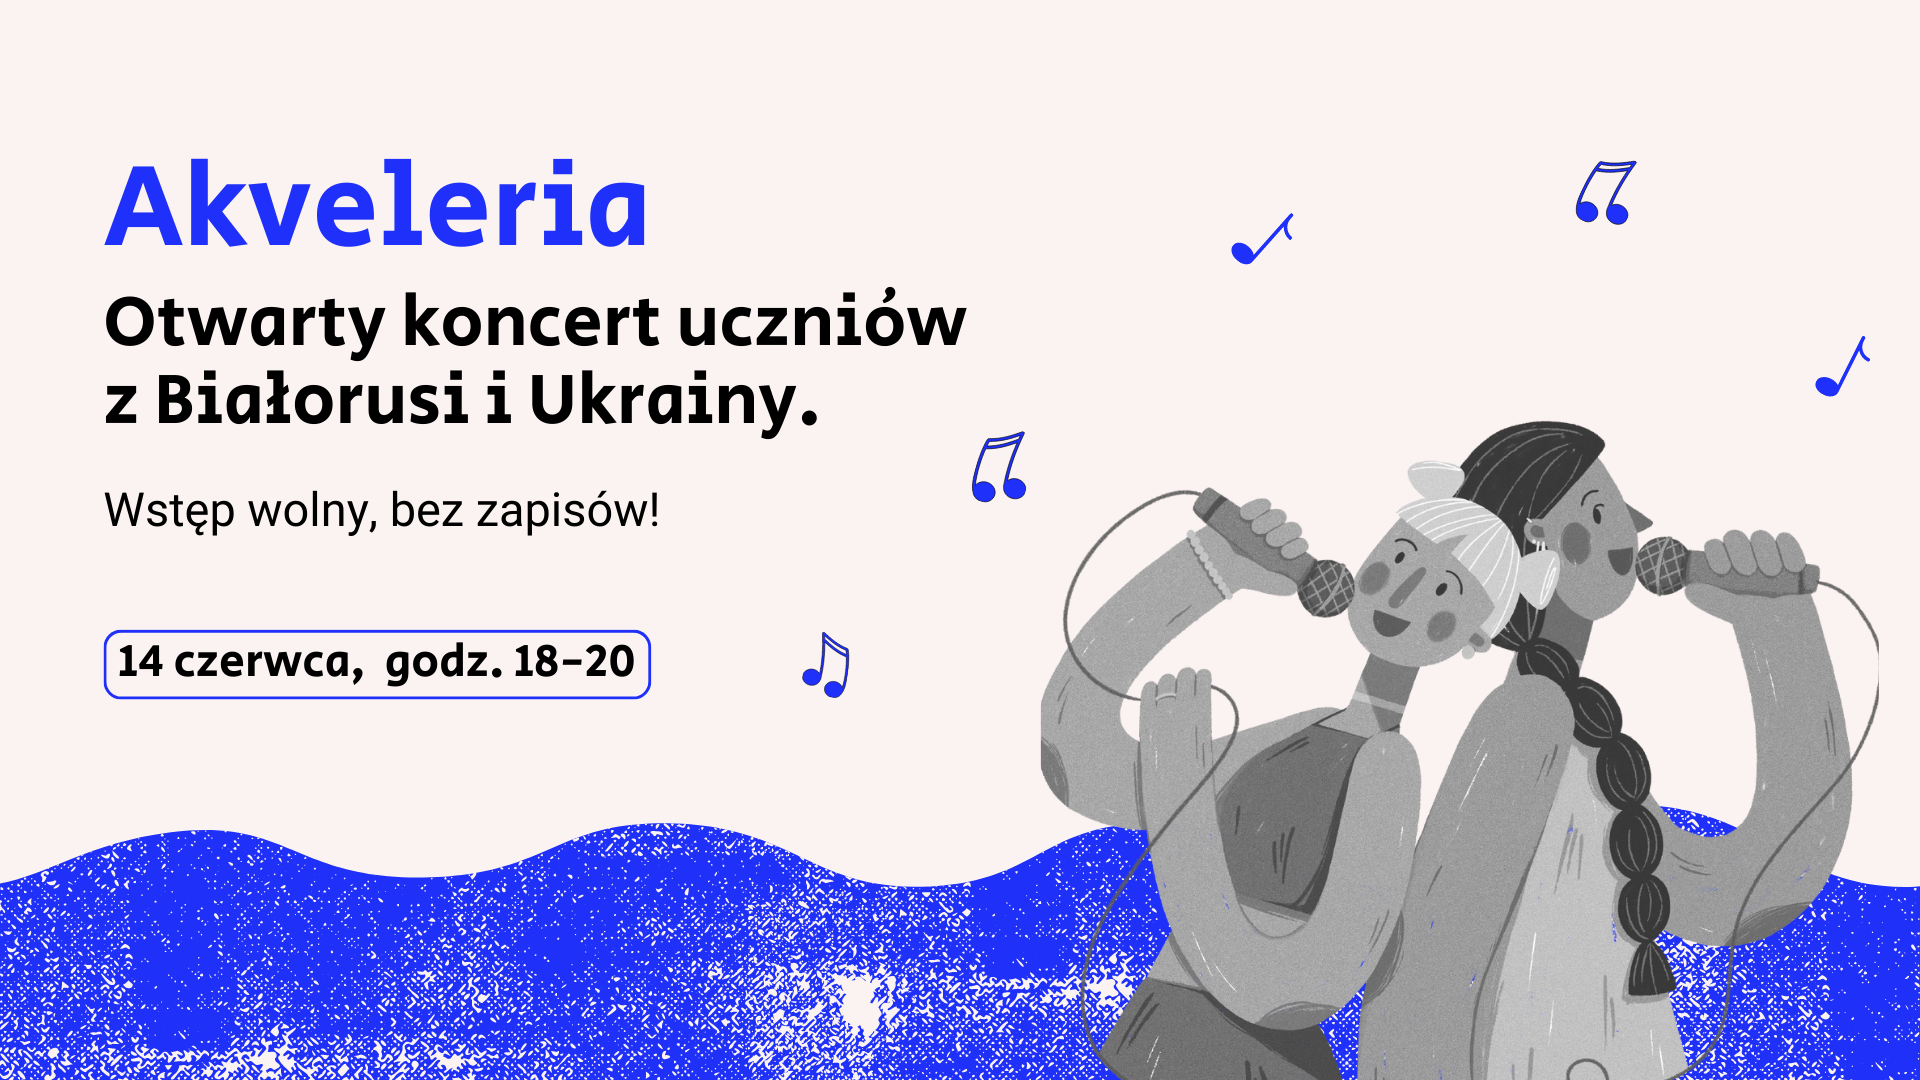 Akvaleria - otwarty koncert uczniów z Białorusi i Ukrainy. Na grafice przedstawione dwie dziewczynki śpiewające oraz nuty.